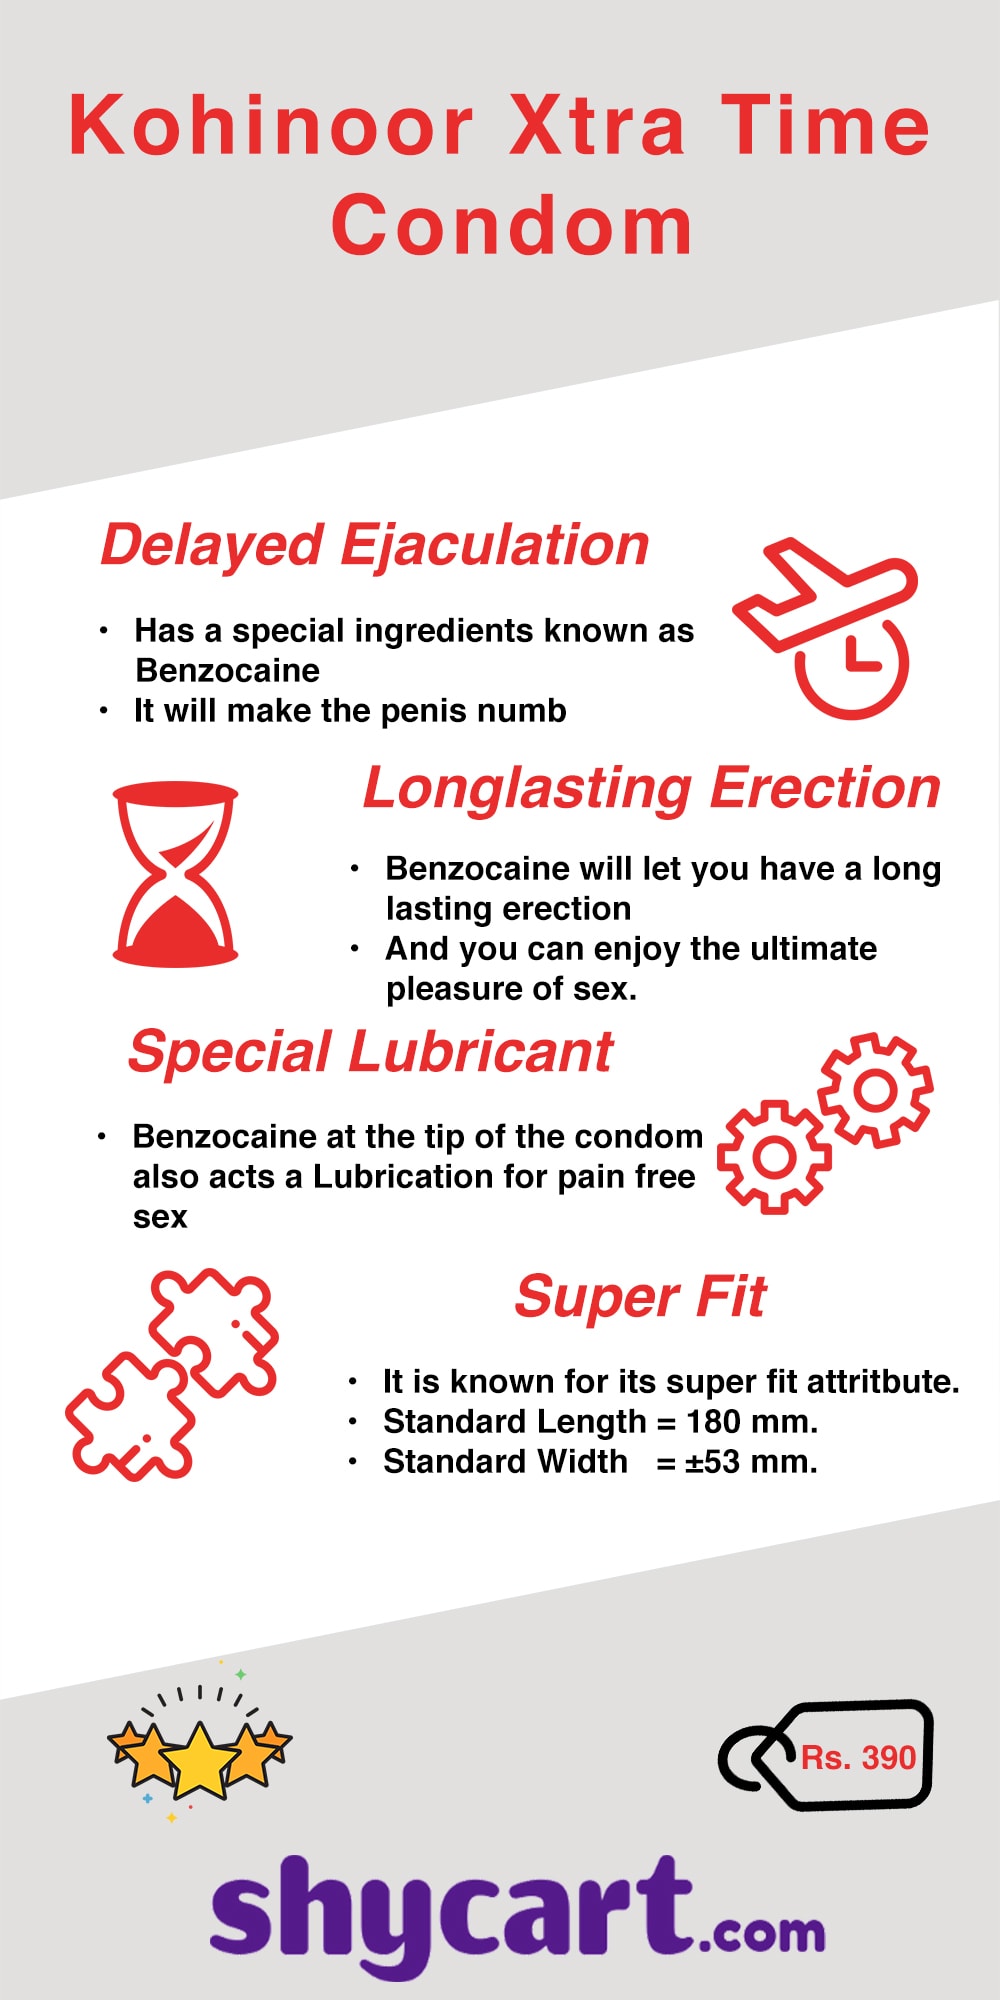 Kohinoor extra time condom - Infographic